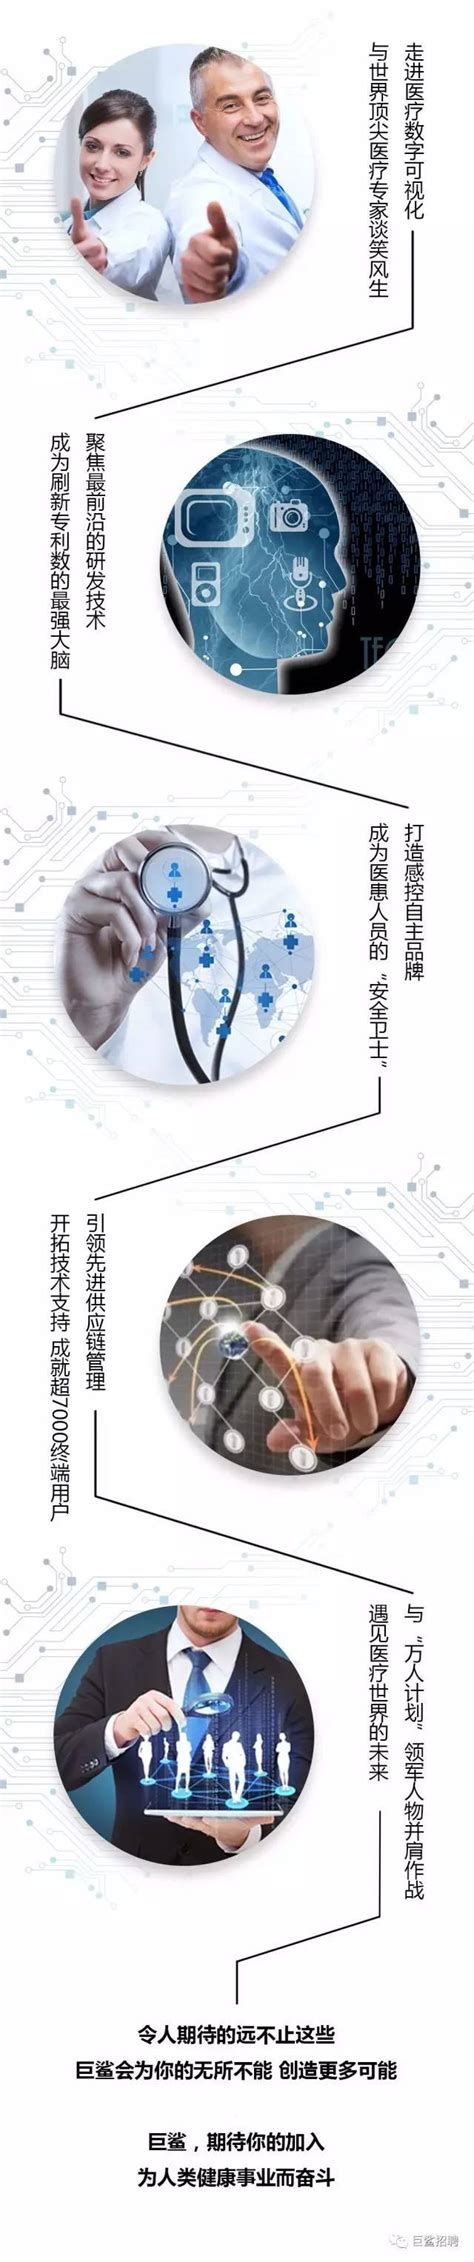 2018南京生物医药招聘会-名来科聘、上海名来生物科技有限公司